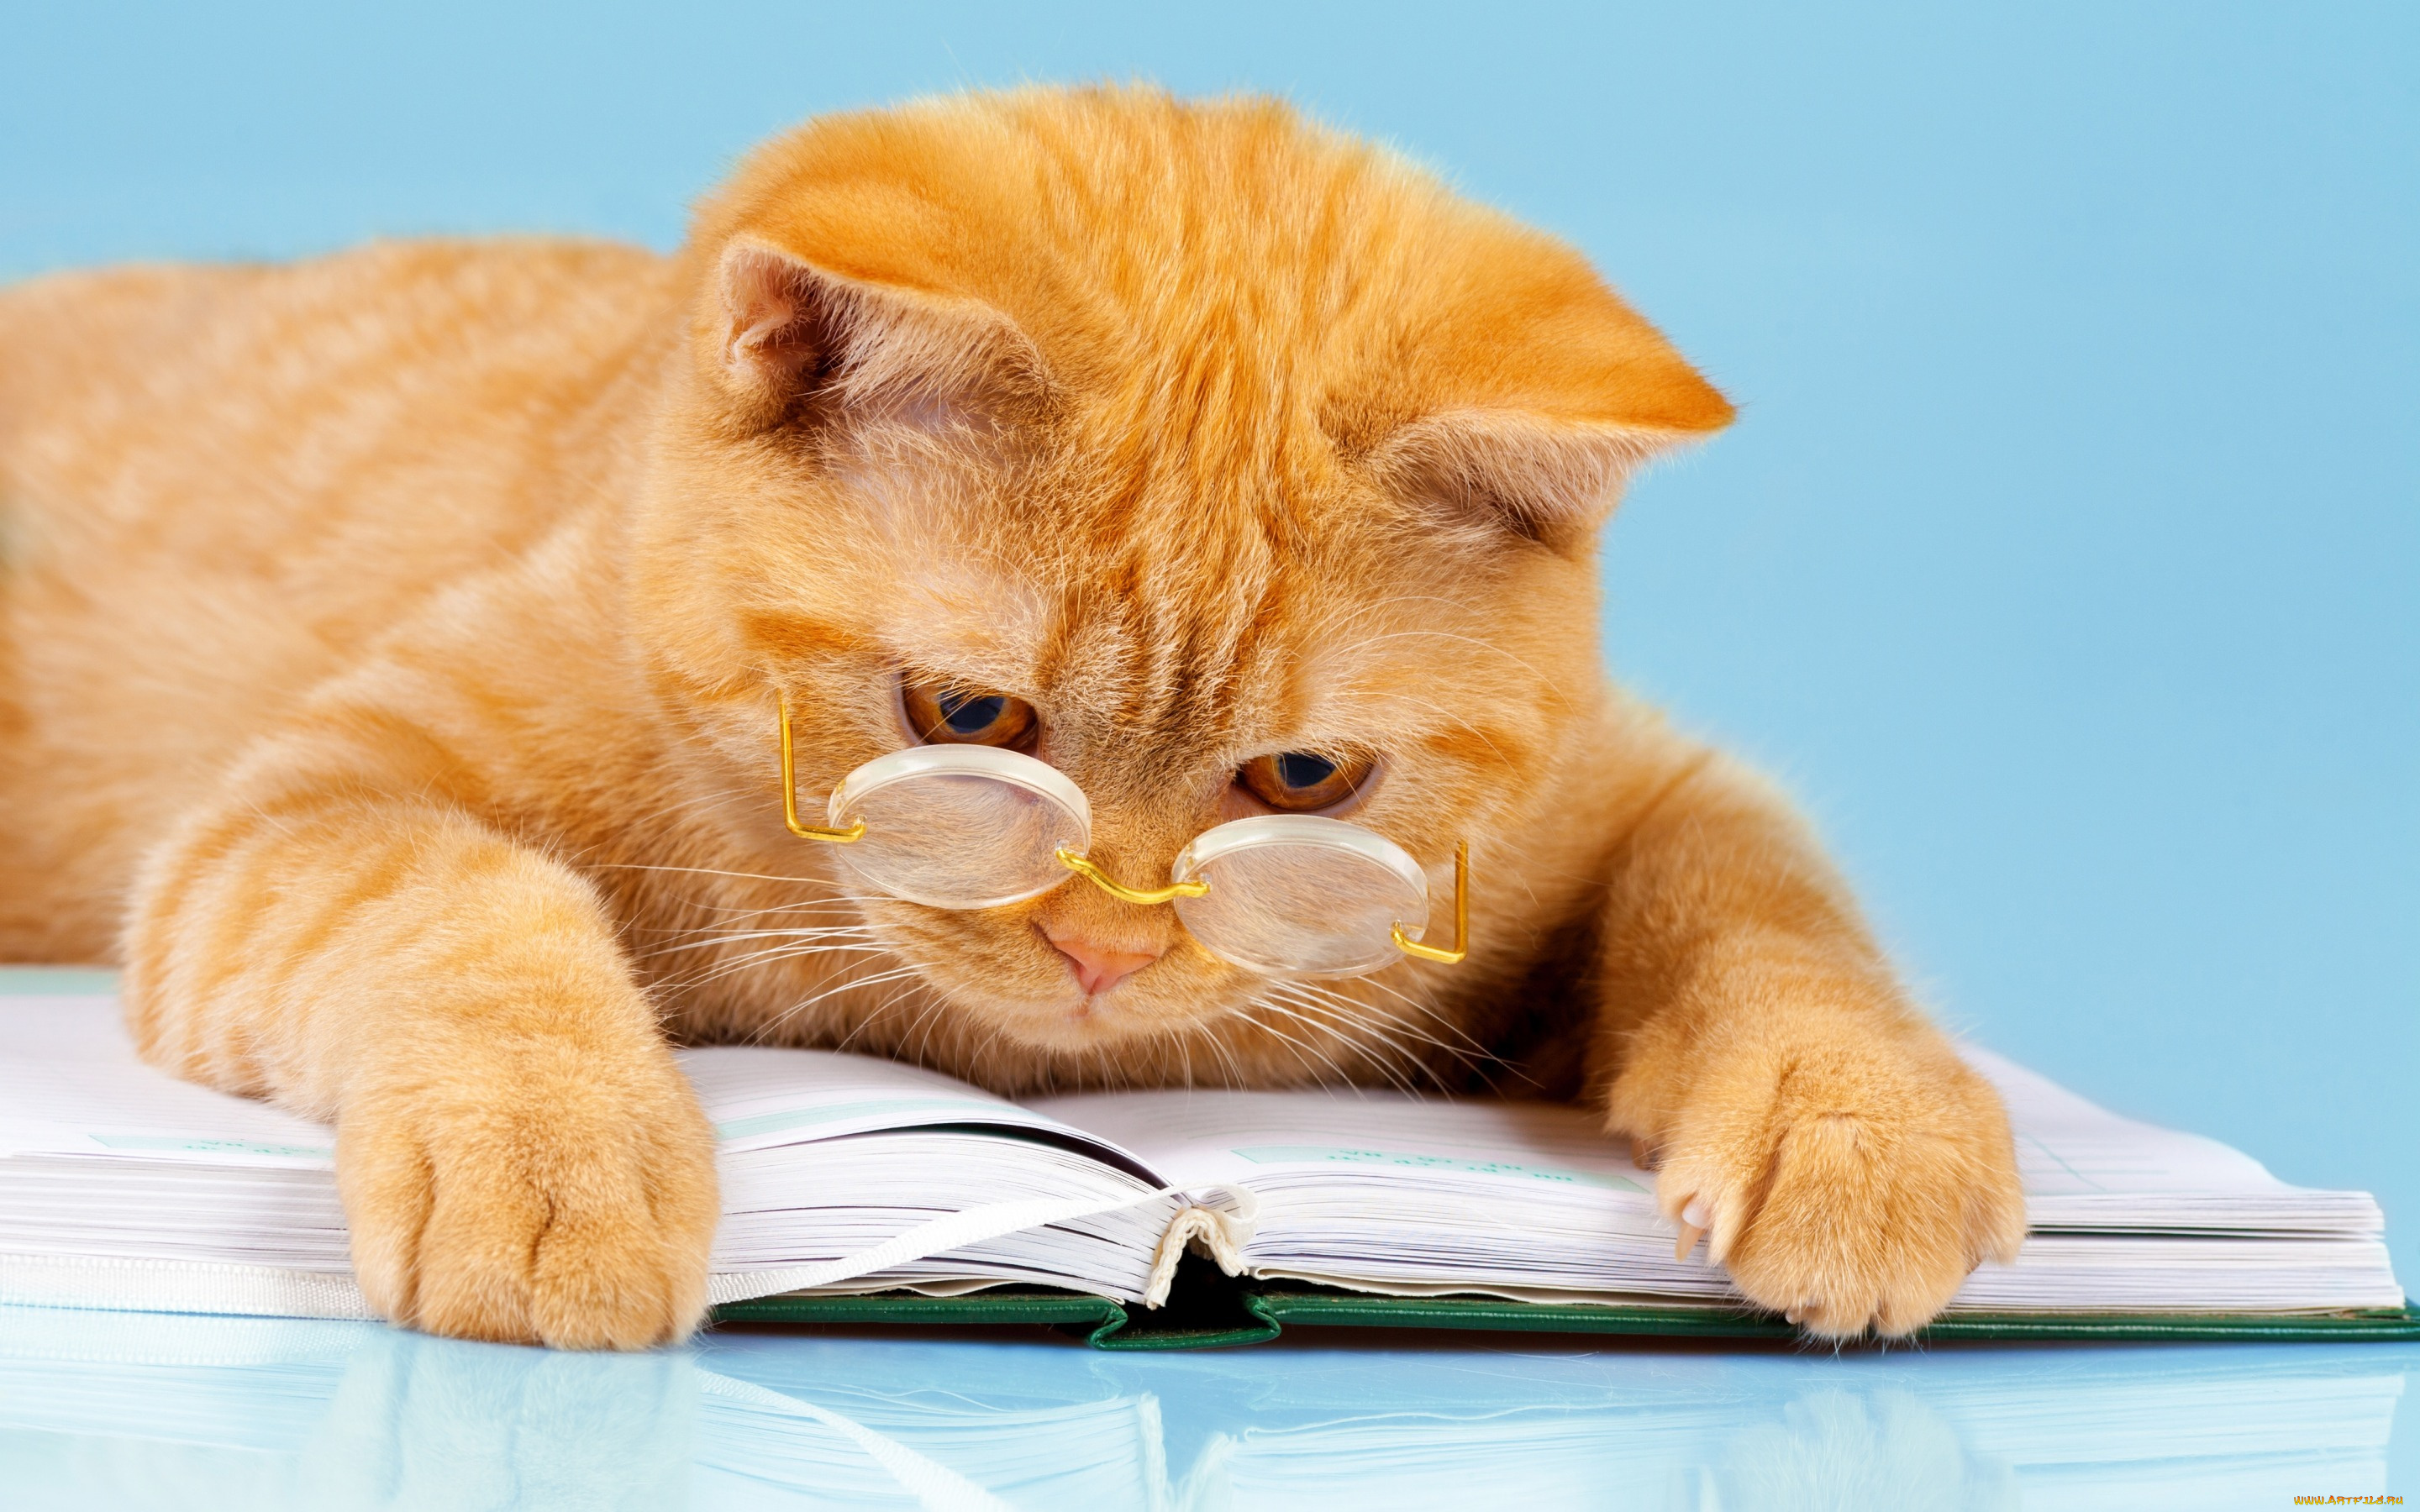 юмор, и, приколы, лапы, лежит, читает, юмор, кот, фон, рыжий, книга, умный, очки